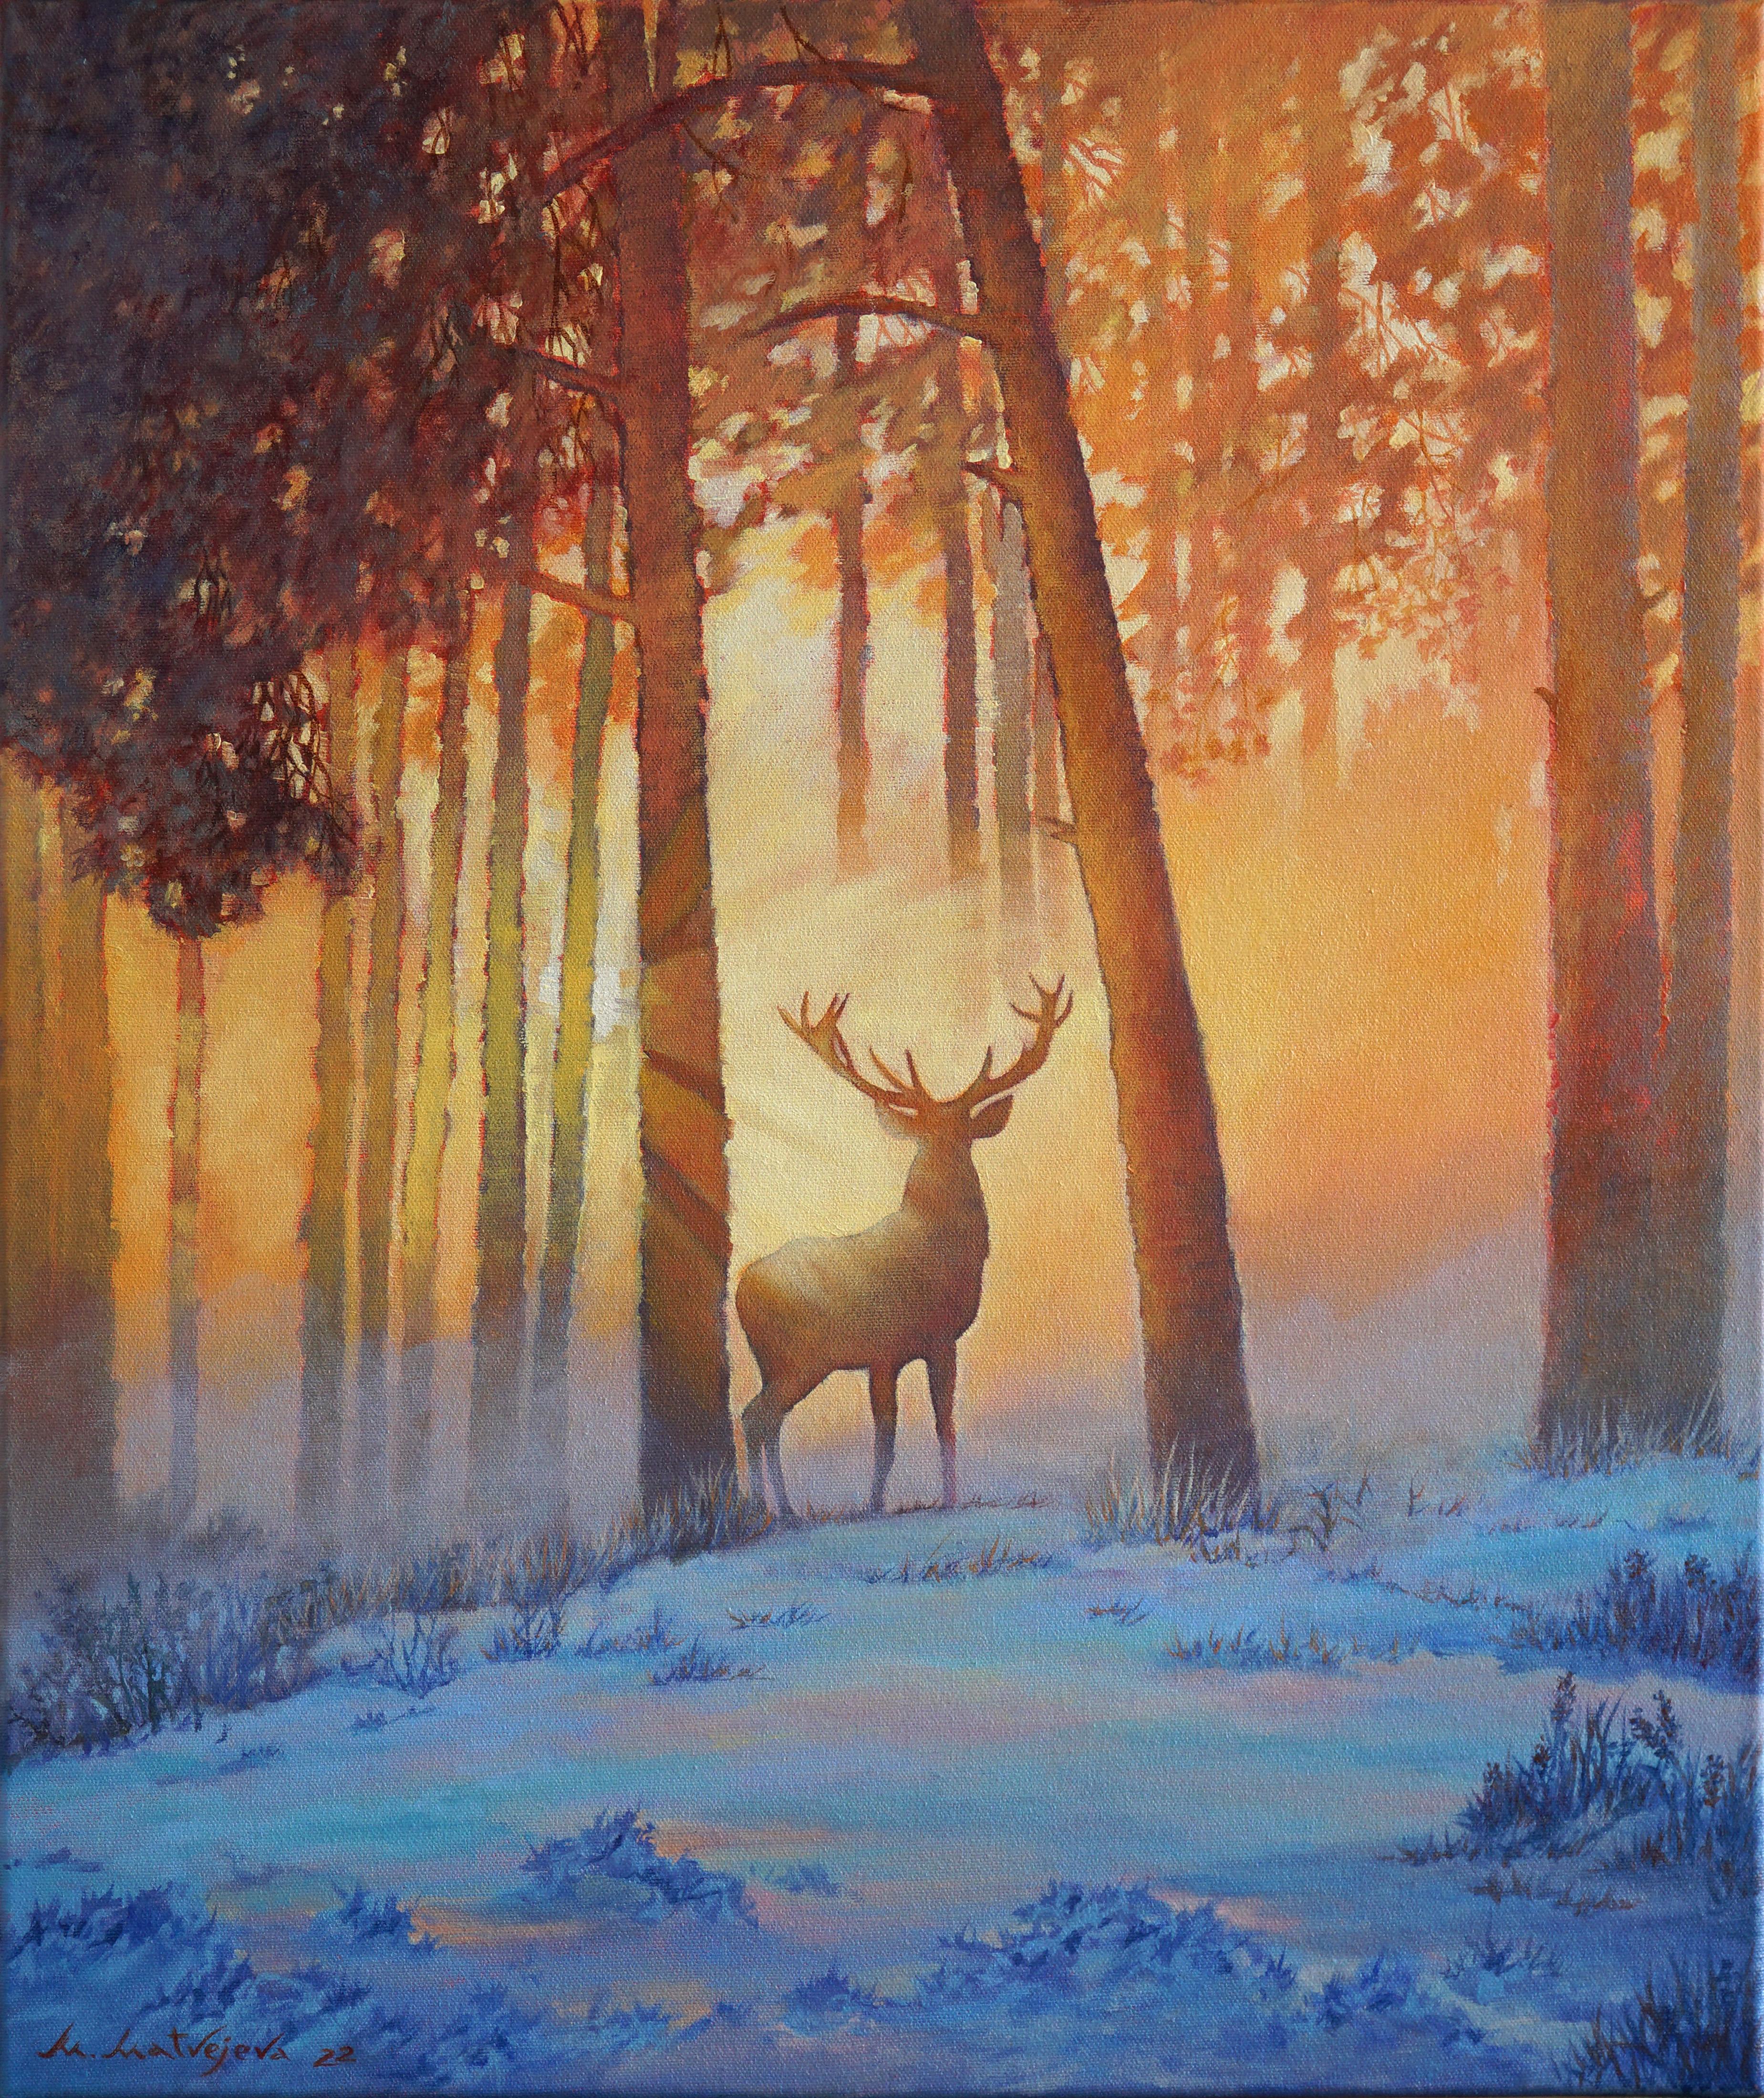 Maria Matveyeva Landscape Print – Forest Spirit Druck auf Leinwand Weihnachtsgeschenk